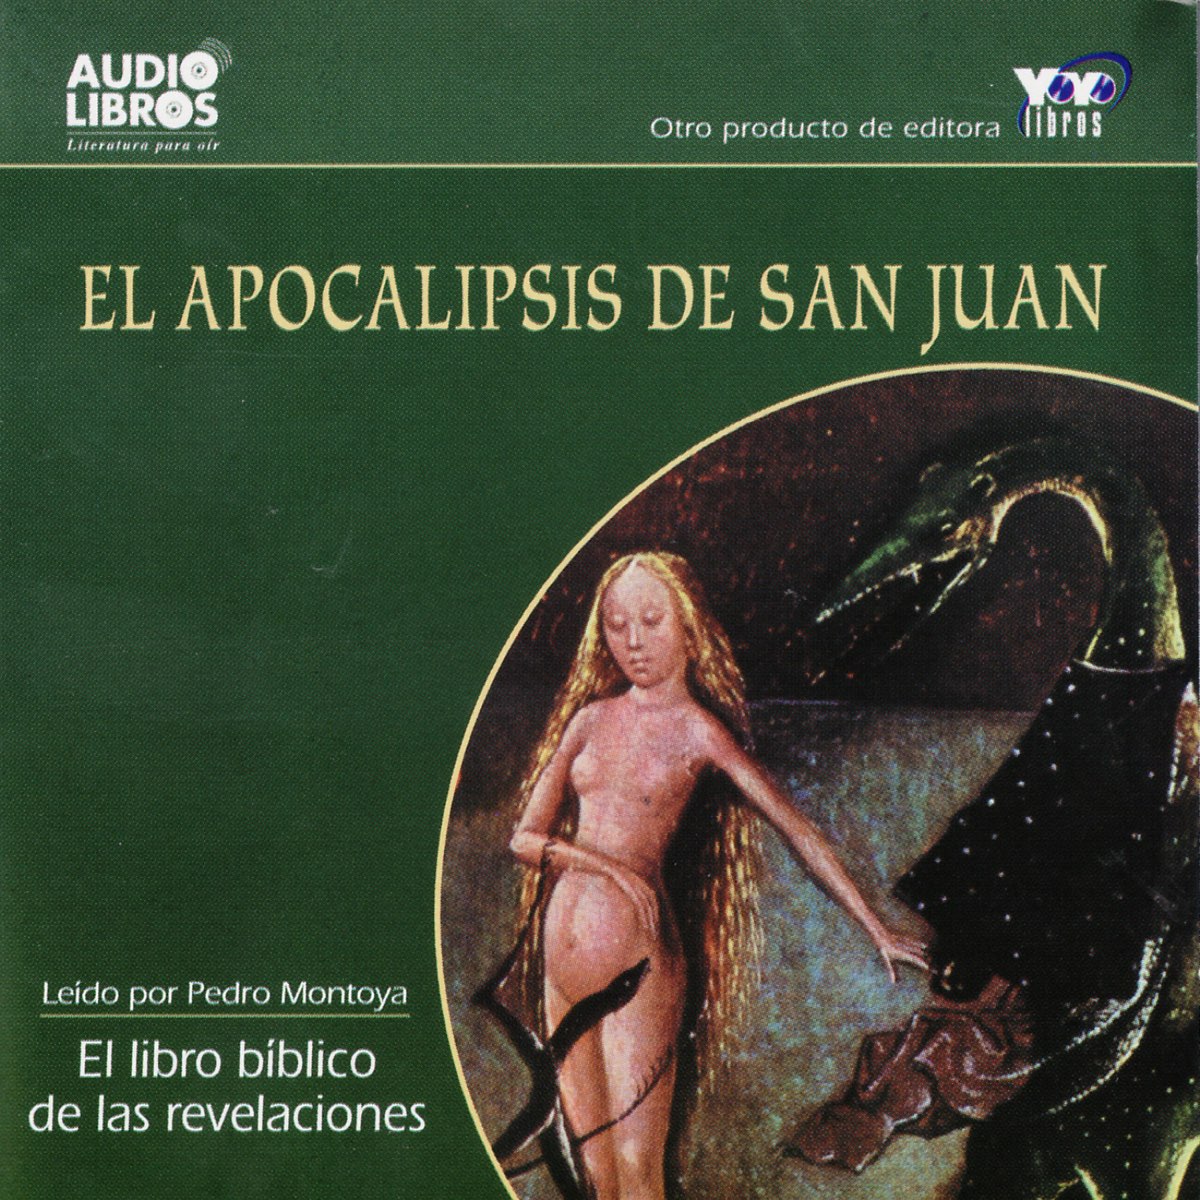 El Apocalipsis de San Juan - El libro Biblico de las revelaciones  (Unabridged) - Album by Perdo Montoya - Apple Music